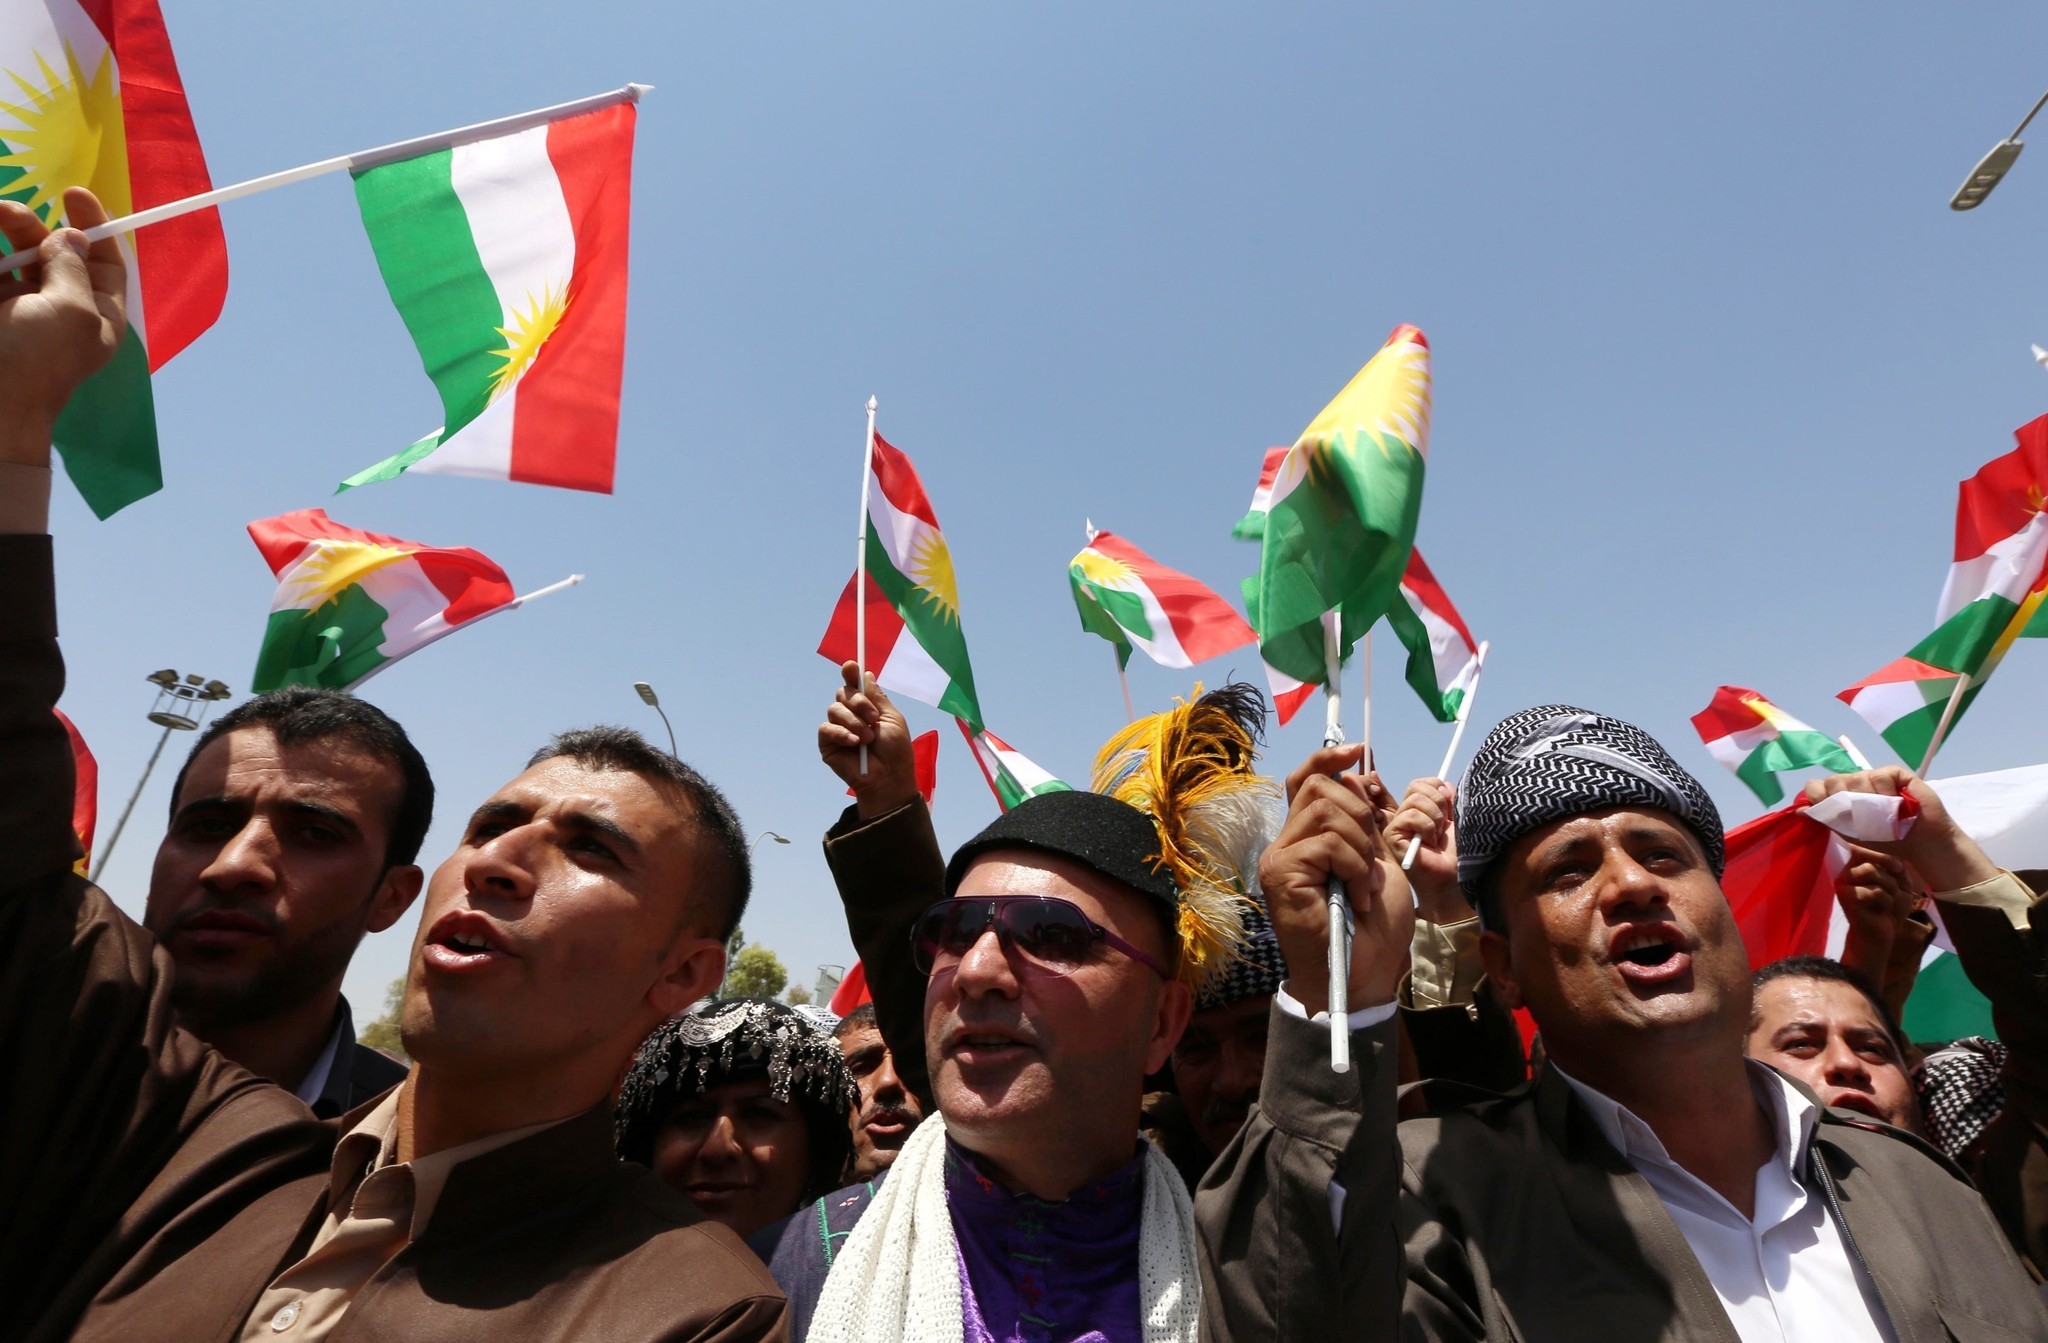 Η Ρωσία τάχθηκε κατά της ίδρυσης κράτους του Κουρδιστάν και προειδοποιεί τους Κούρδους – Το ίδιο και η Γαλλία